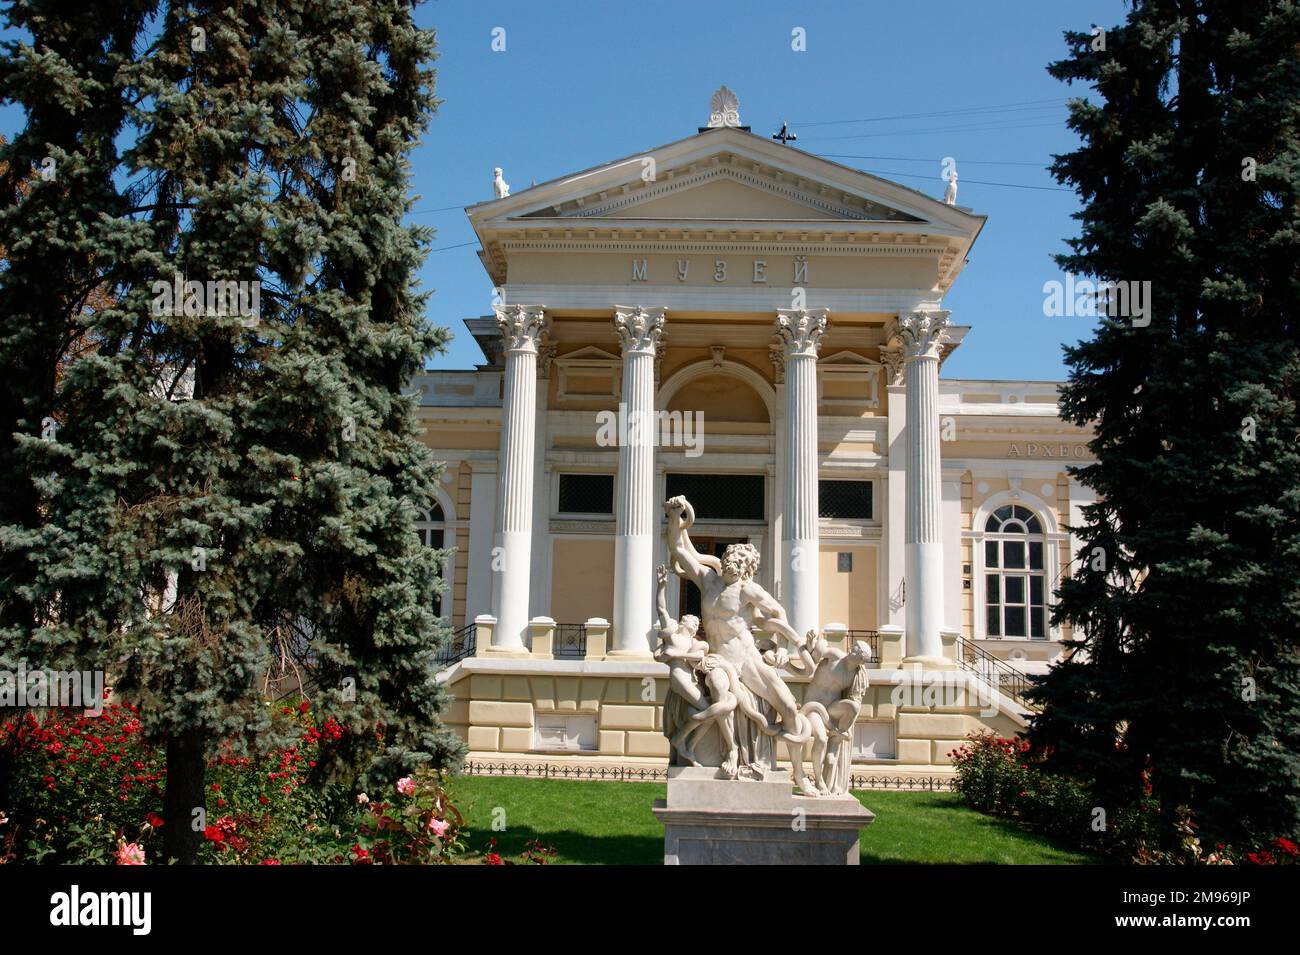 Vue sur le Musée archéologique d'Odessa, Ukraine, avec une sculpture de Laocoon devant (une copie -- l'original est dans le Musée du Vatican, Rome). Le musée a été fondé en 1825. Banque D'Images